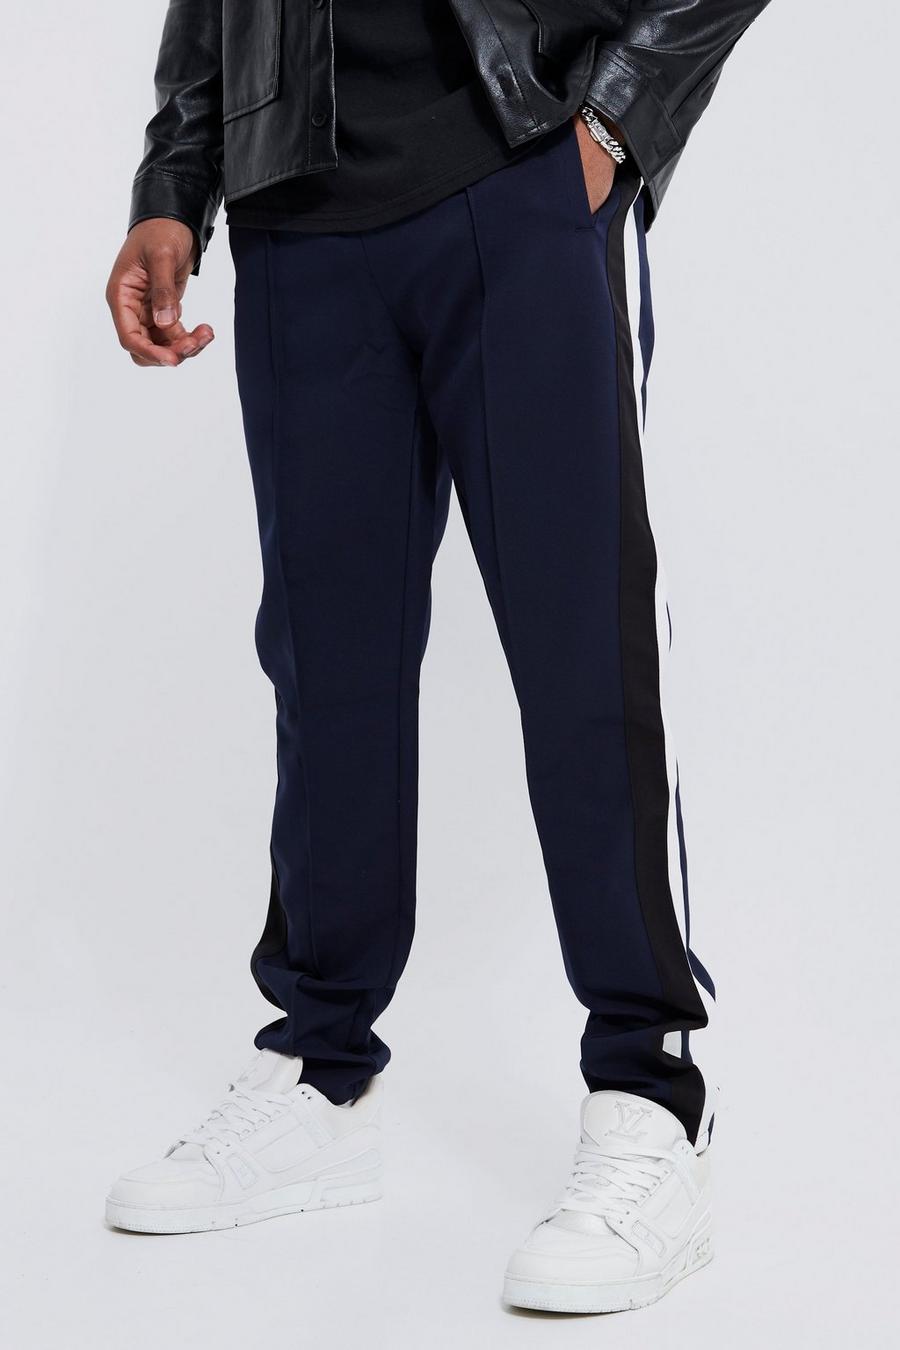 Pantalón Tall entallado con estampado universitario, Navy azul marino